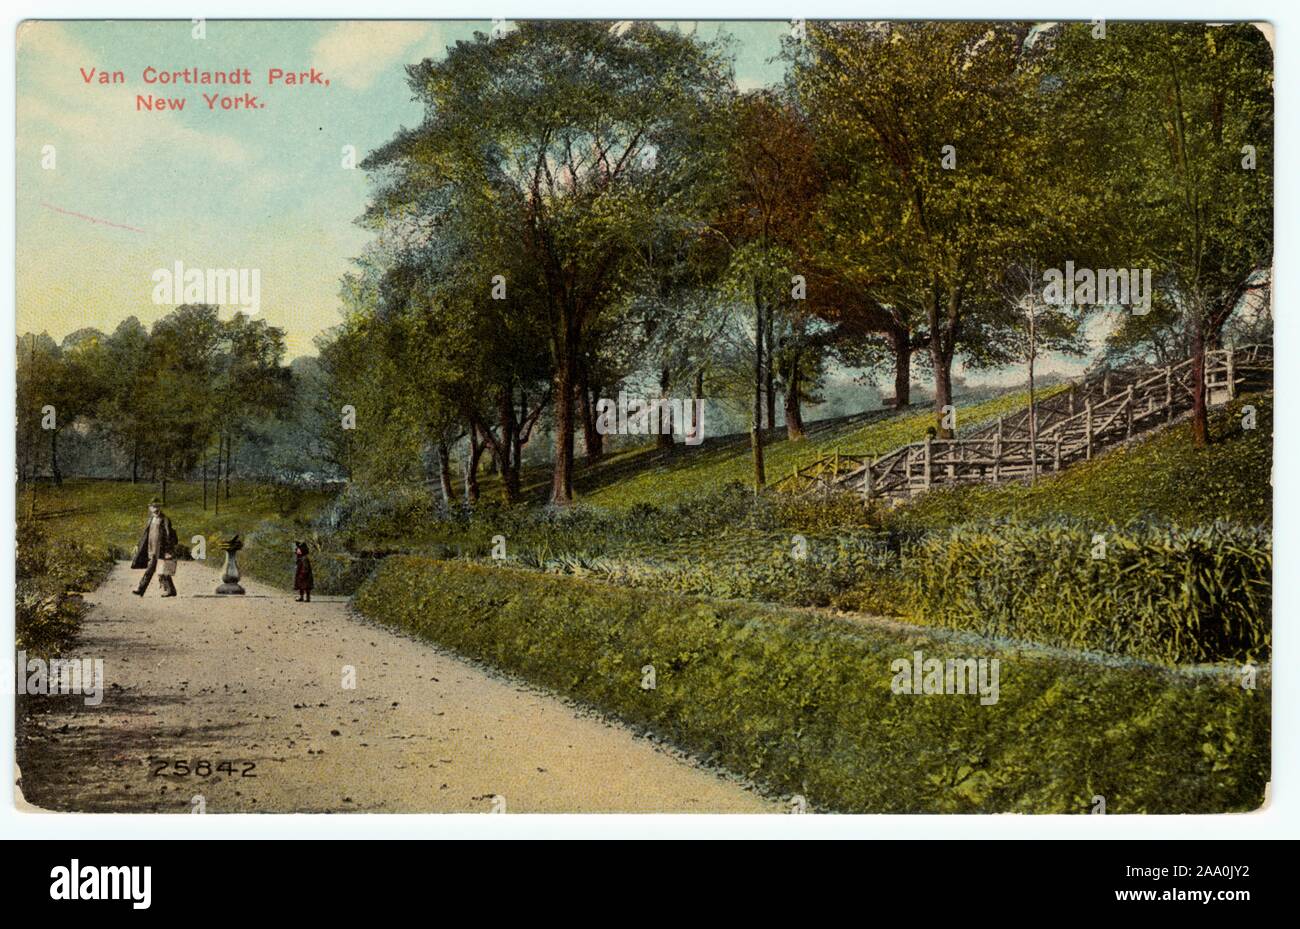 Carte postale illustrée d'un sentier en Van Cortlandt Park, New York, 1909. À partir de la Bibliothèque publique de New York. () Banque D'Images